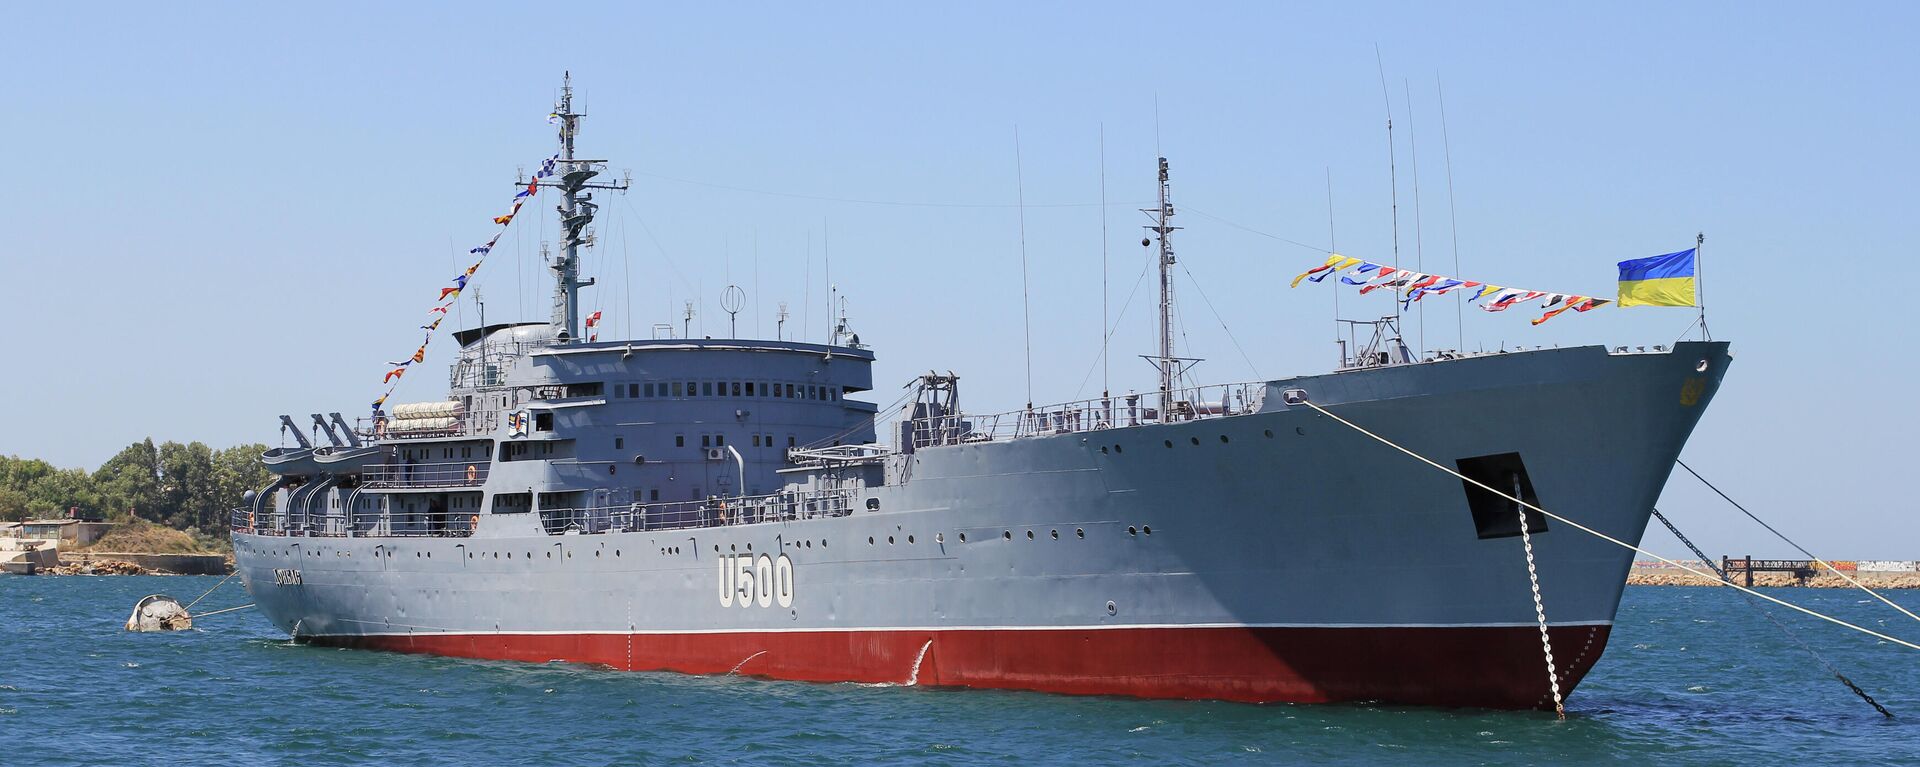 El buque 'Donbass' de la Armada de Ucrania - Sputnik Mundo, 1920, 16.12.2021